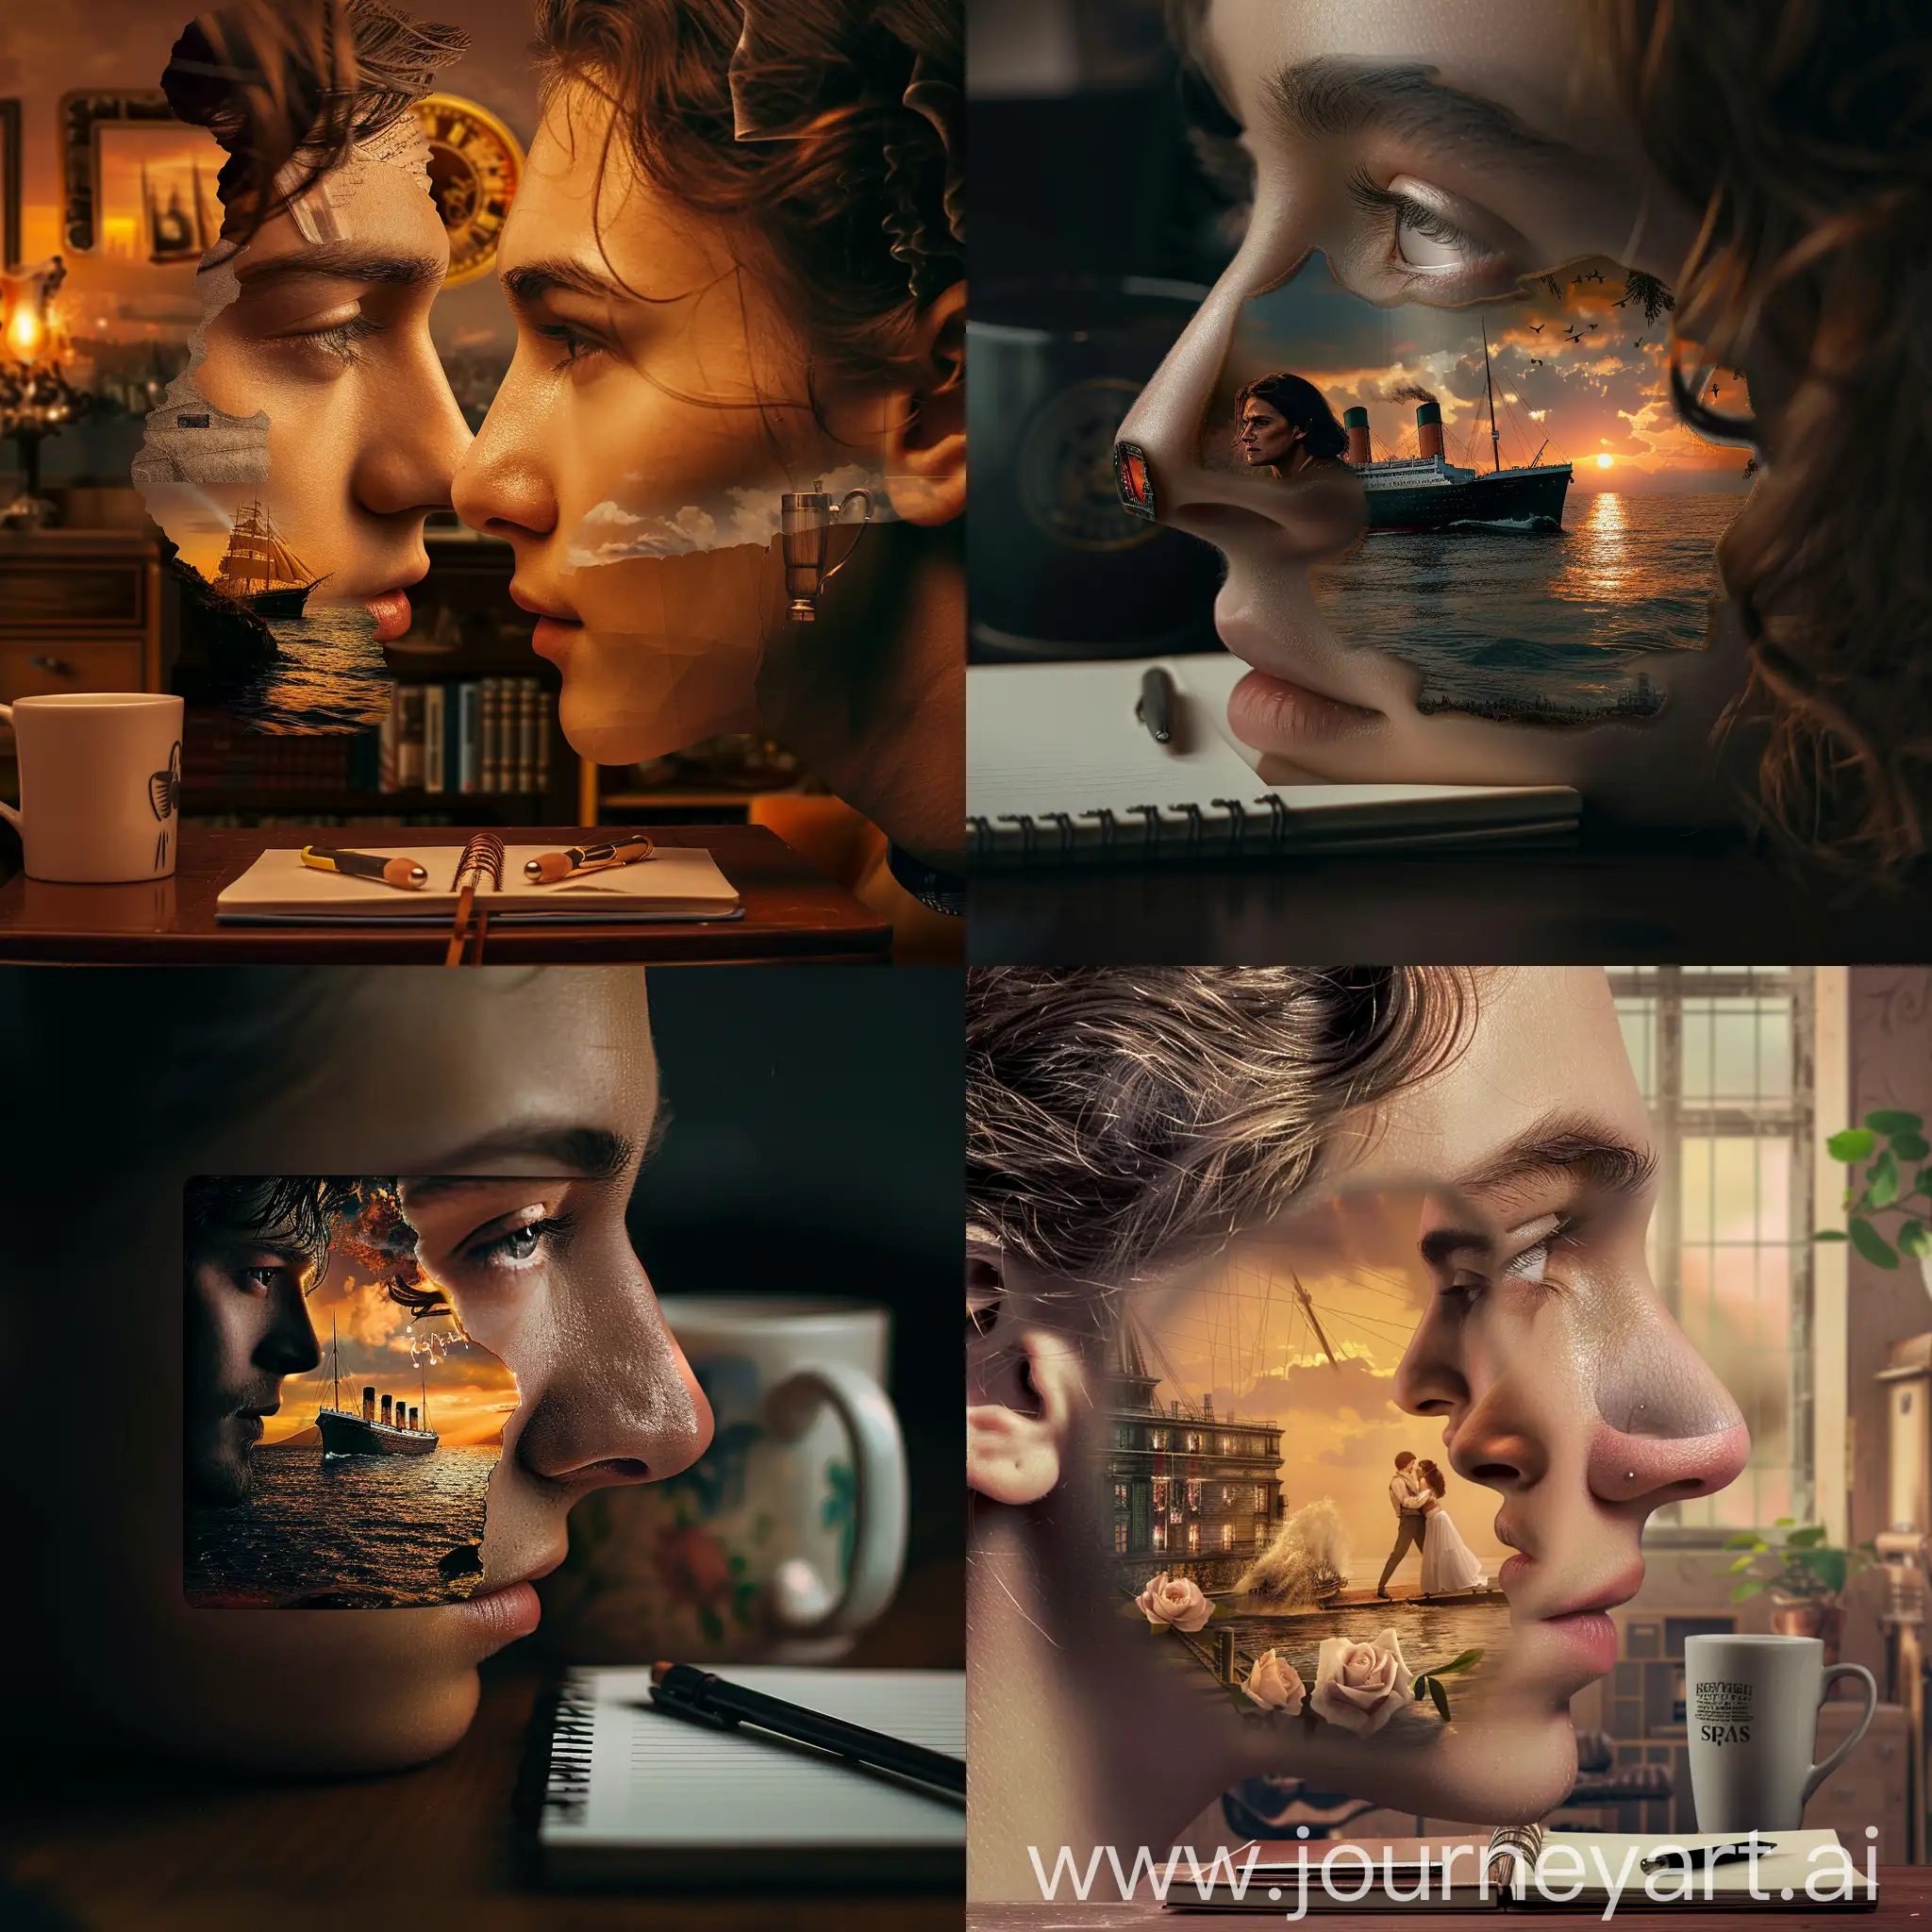 Изображение Джека и Розы из сцены на носу "Титаника" с добавлением элементов домашнего офиса (например, ноутбук и кружка кофе).